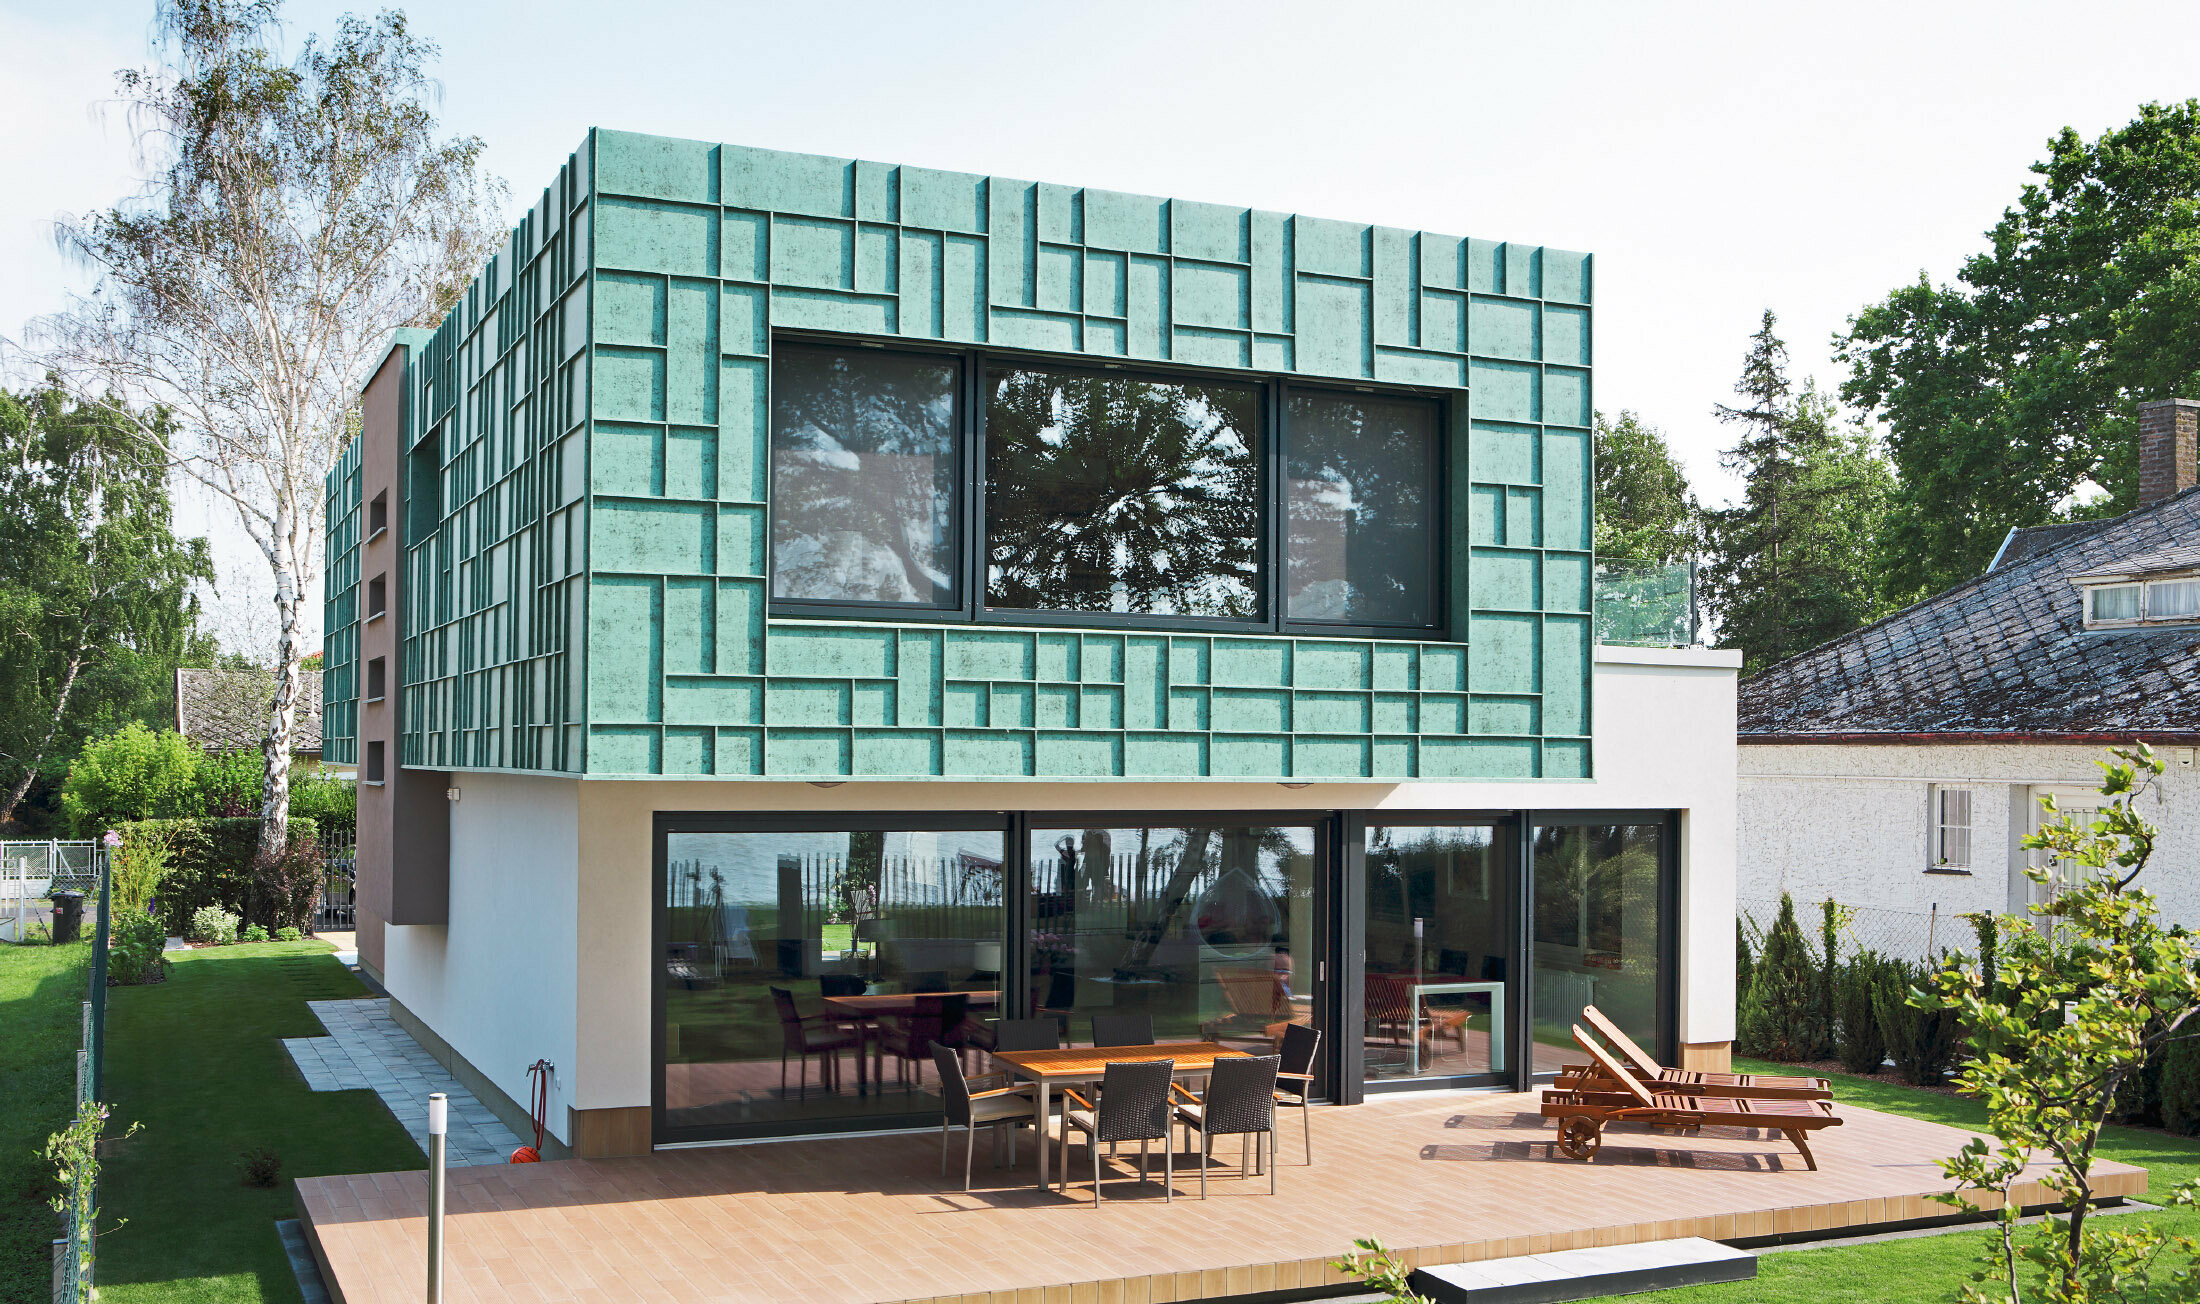 Moderní rodinný domek s fasádou odolnou proti větru, obloženou prvky PREFALZ v barvě P10 zelená patina.